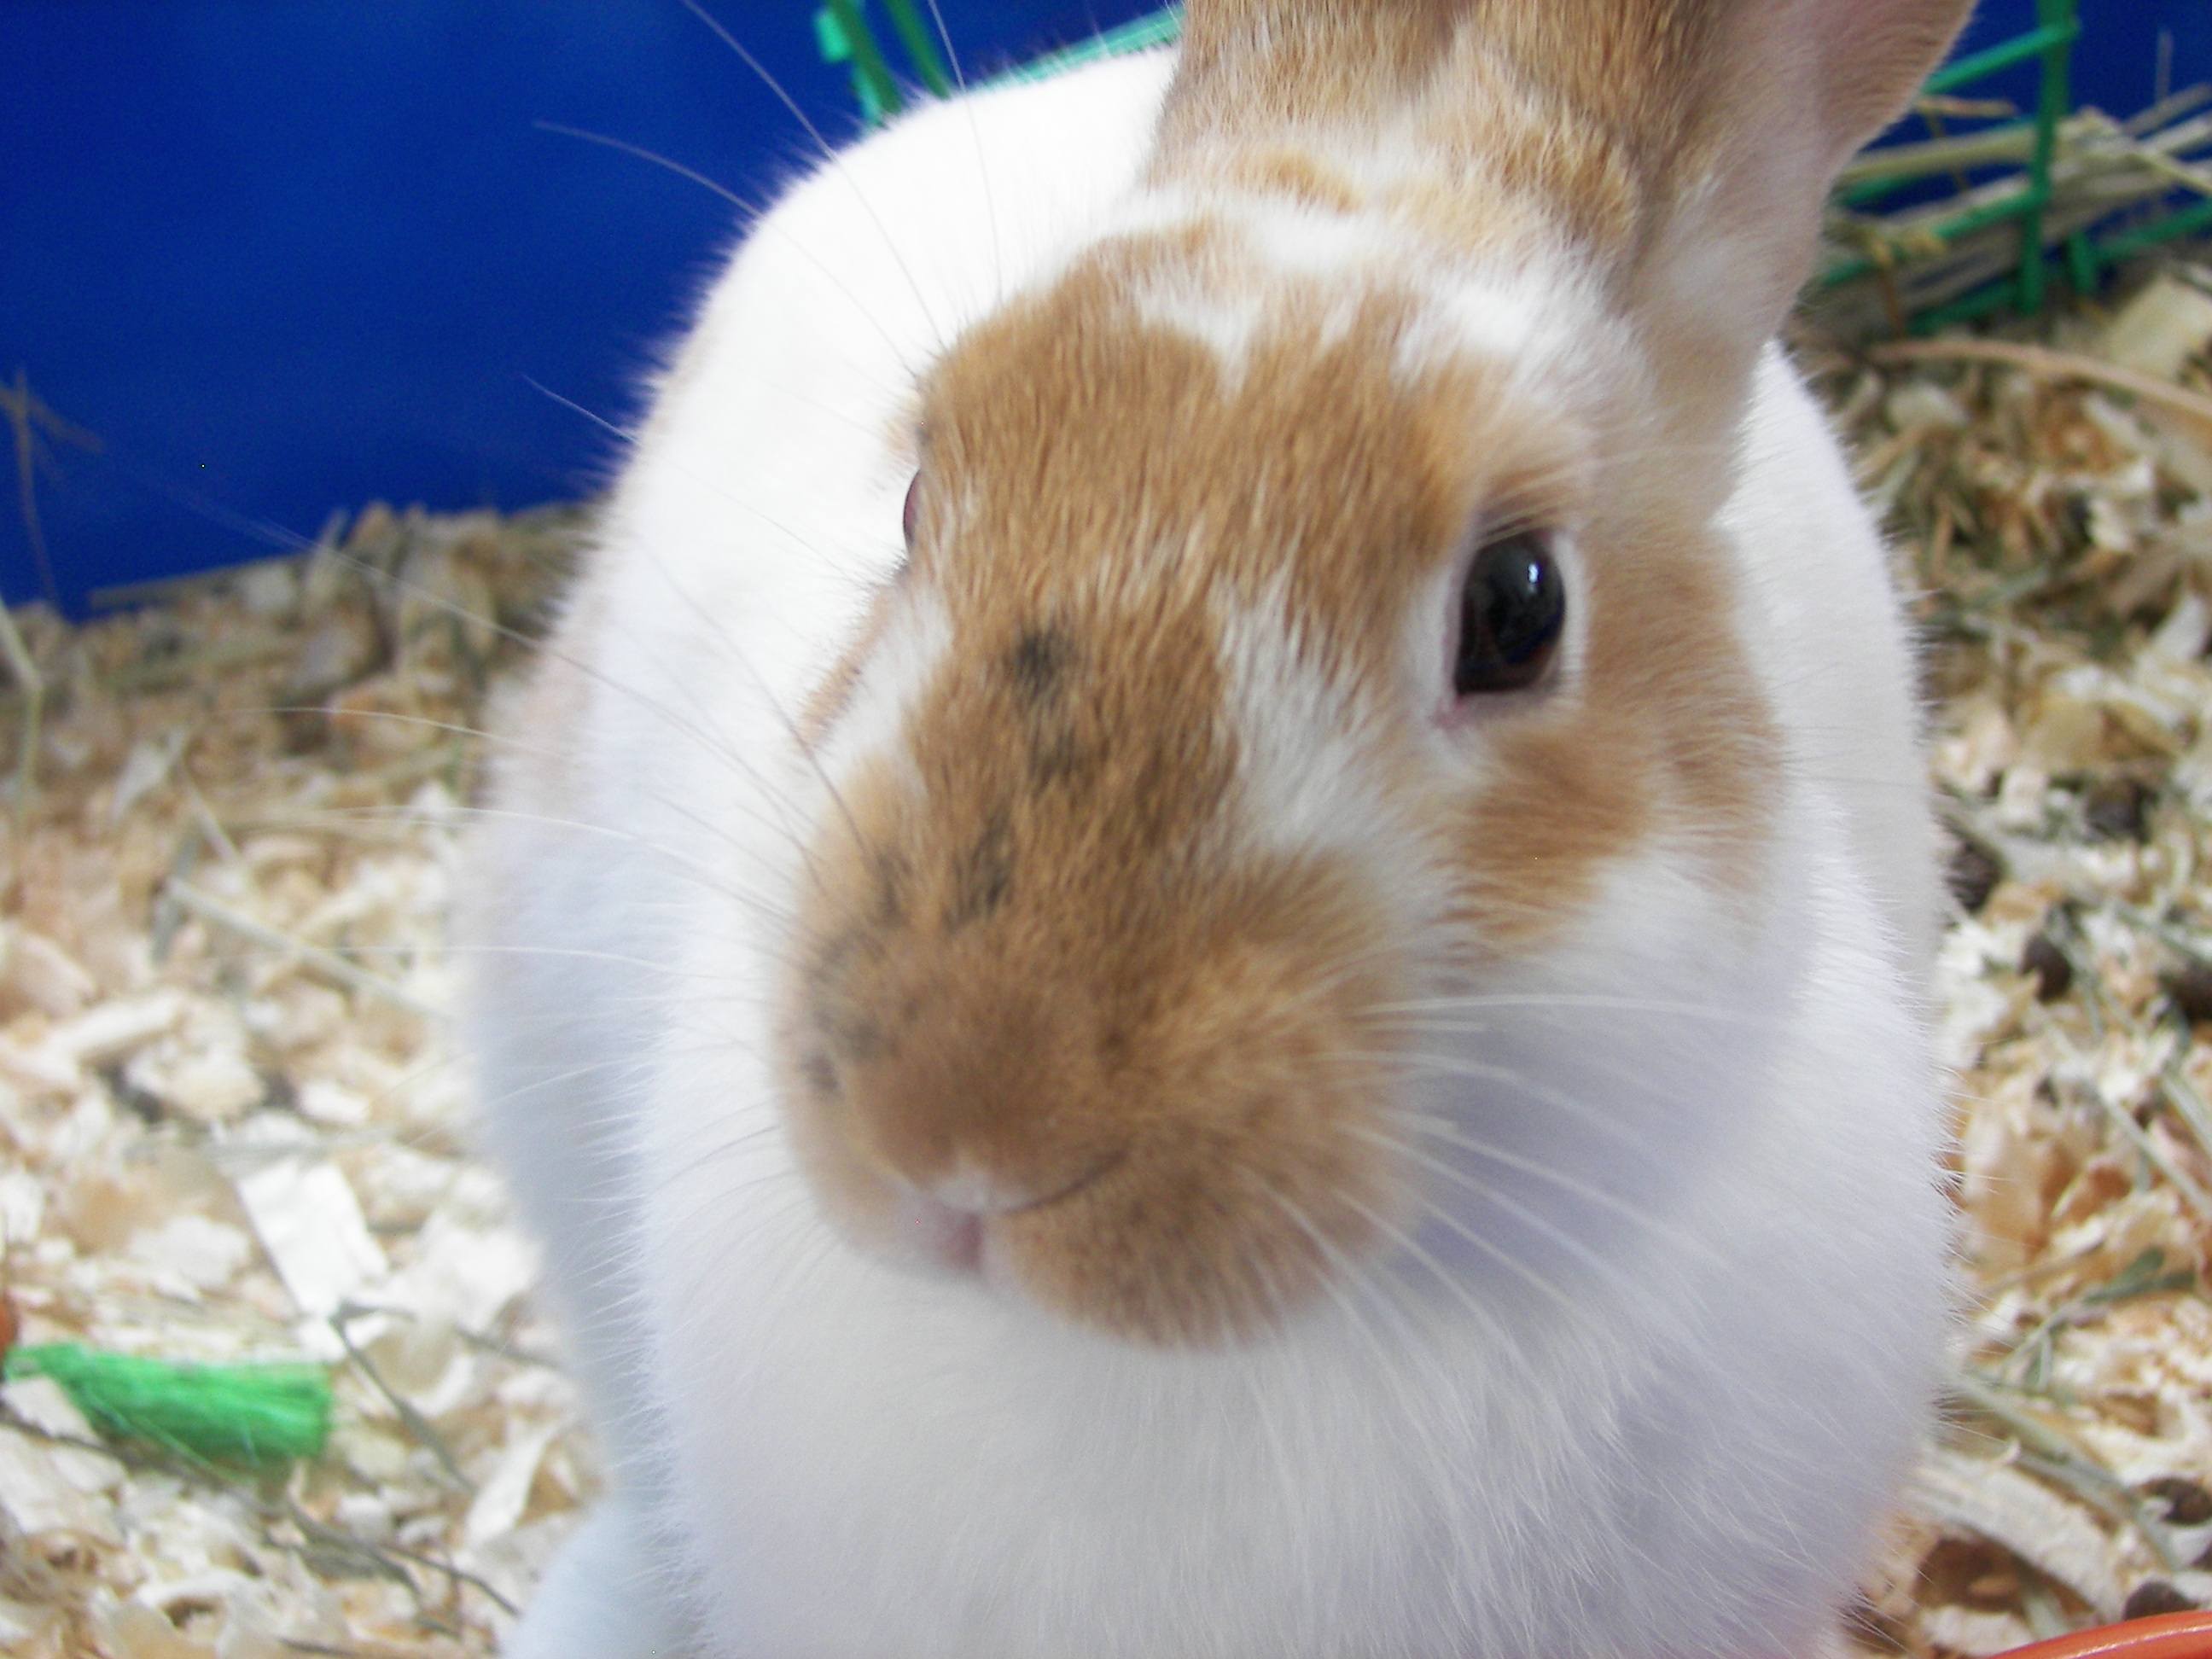 A Netherland dwarf rabbit called Butterscotch.